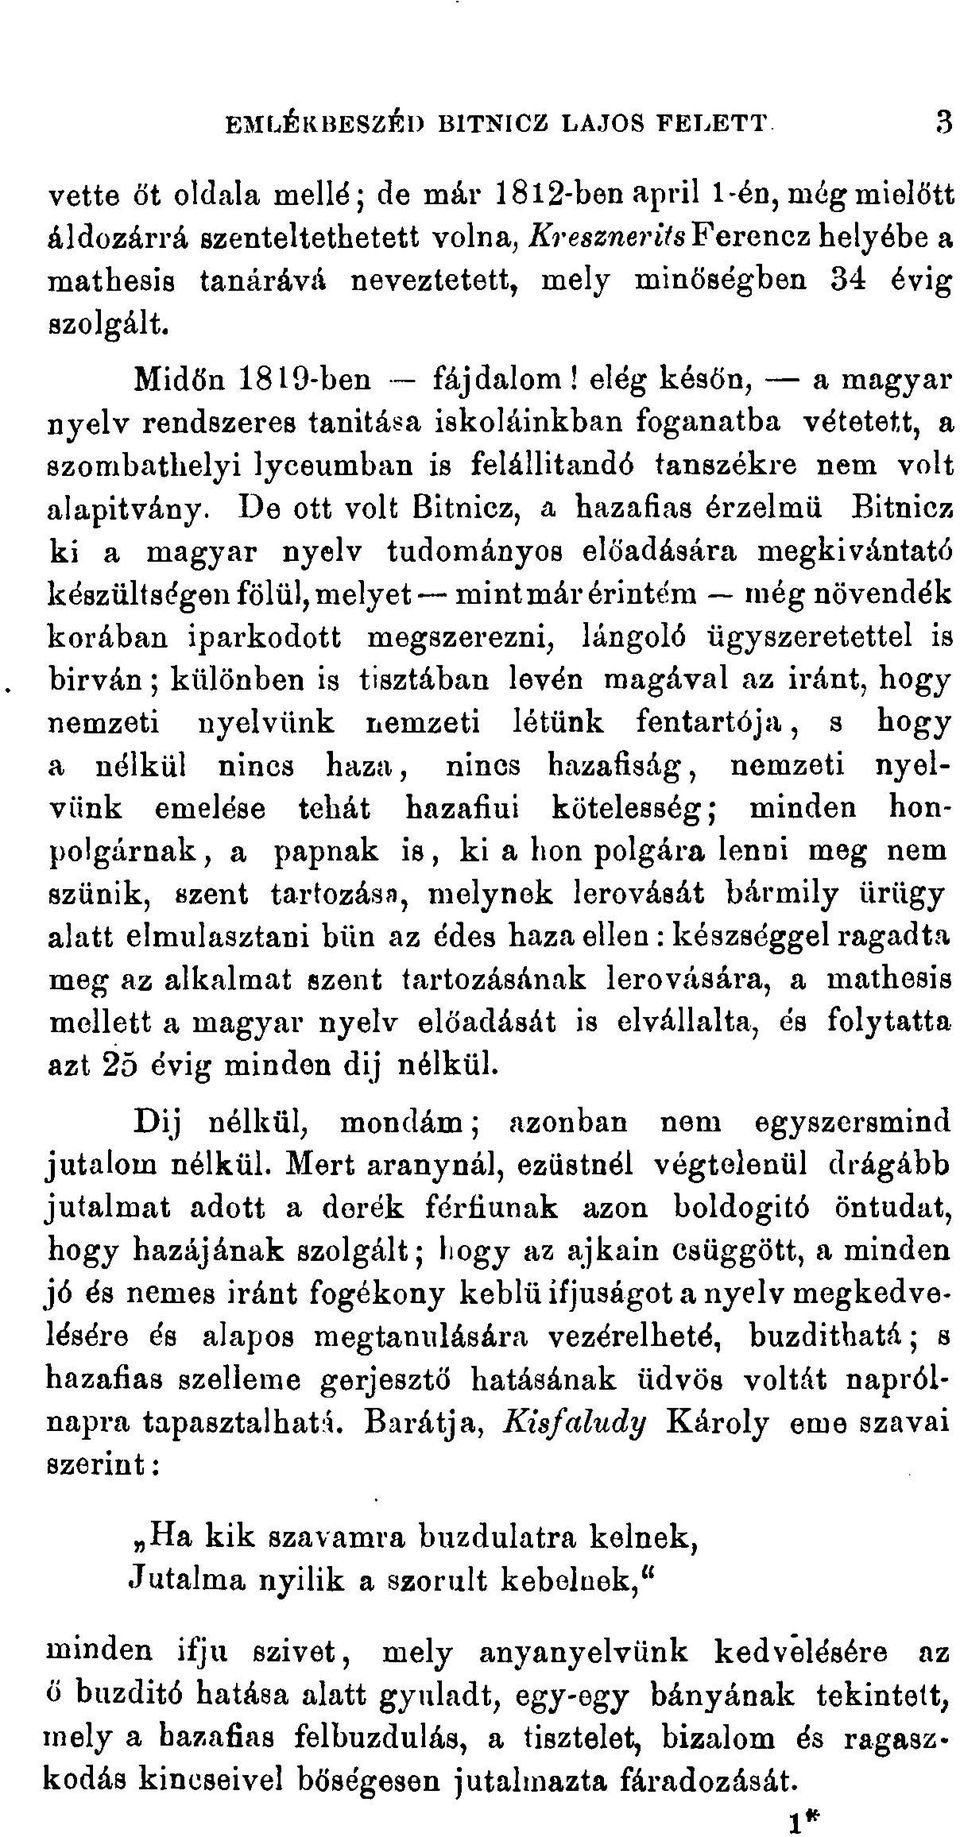 Midőn 1819-ben fájdalom! elég későn, a magyar nyelv rendszeres tanitása iskoláinkban foganatba vétetett, a szombathelyi lyceumban is felállitandó tanszékre nem volt alapítvány.